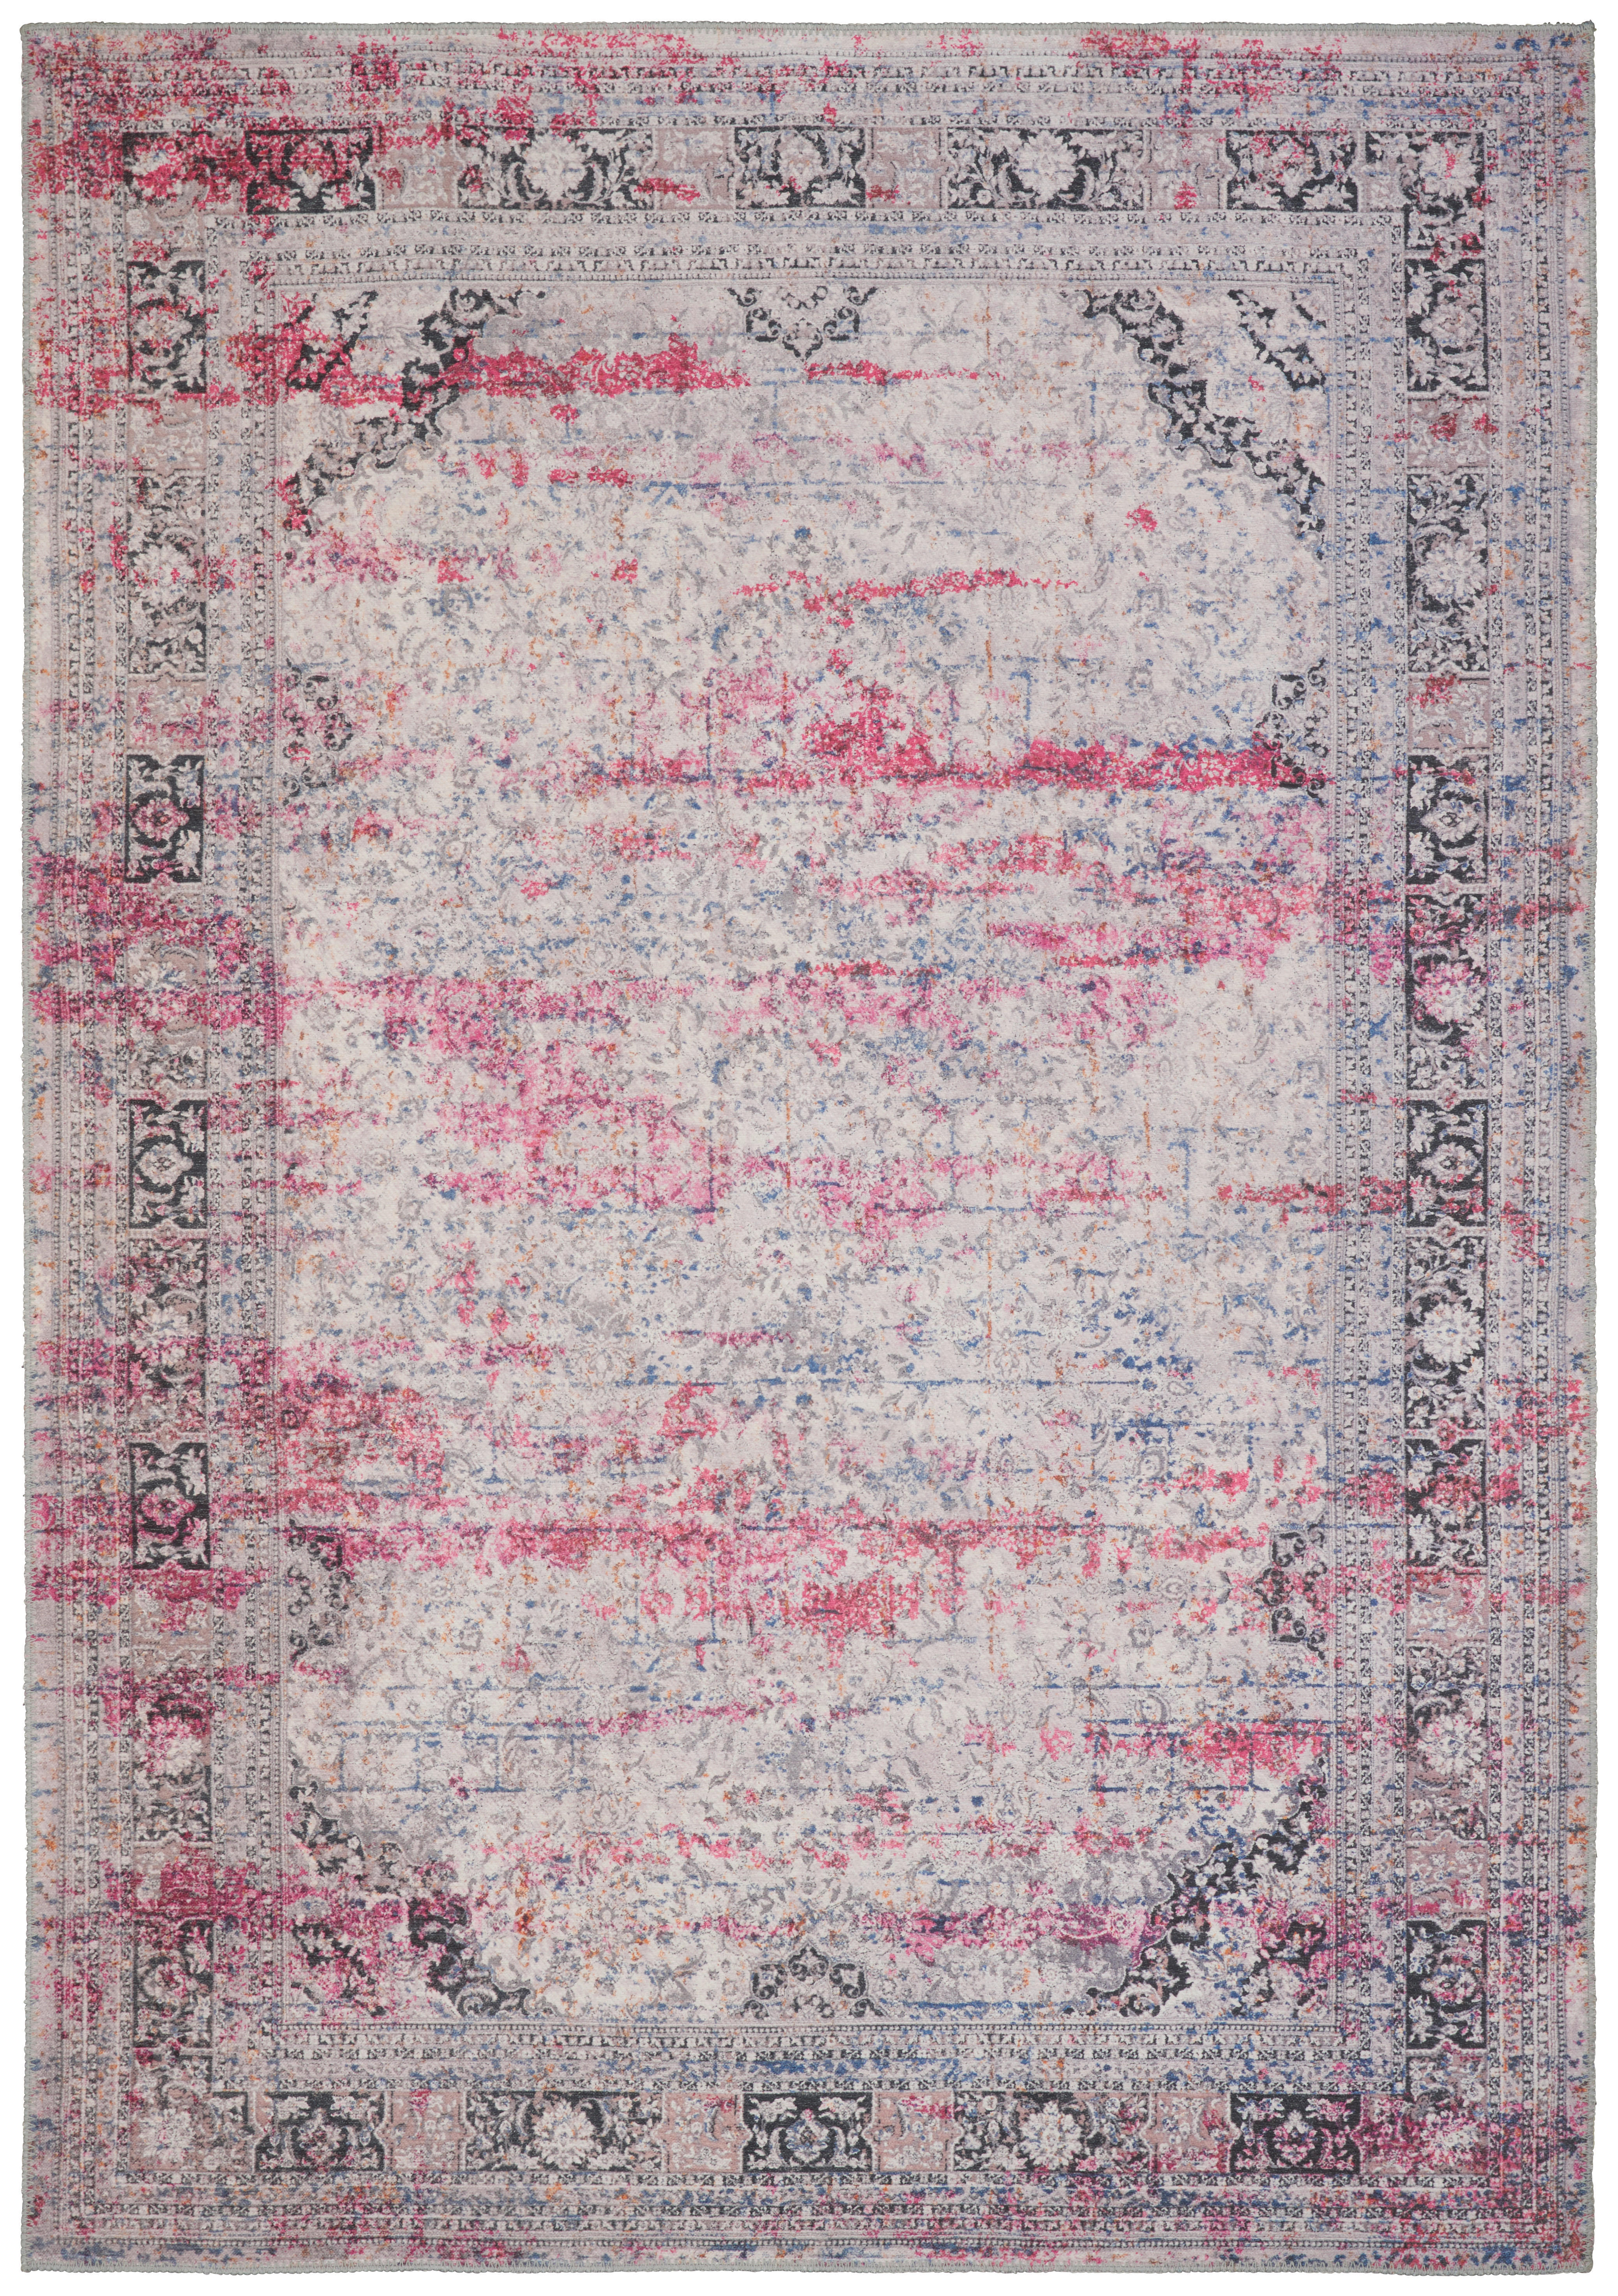 Novel VINTAGE KOBEREC, 80/150 cm, pink - pink - textil